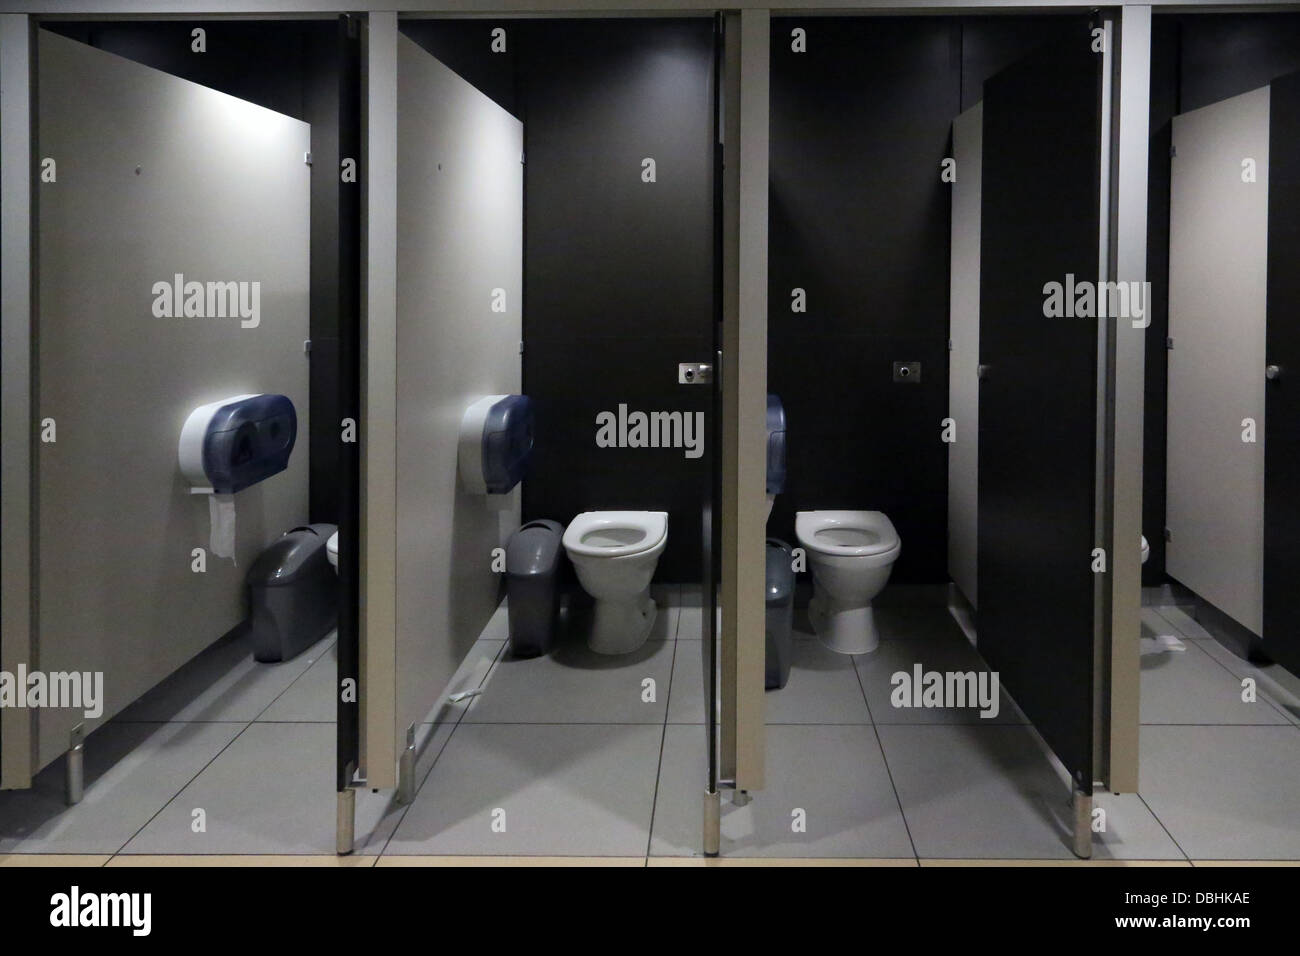 Les toilettes publiques avec rinçage automatique à la station d'autoroute Angleterre Banque D'Images